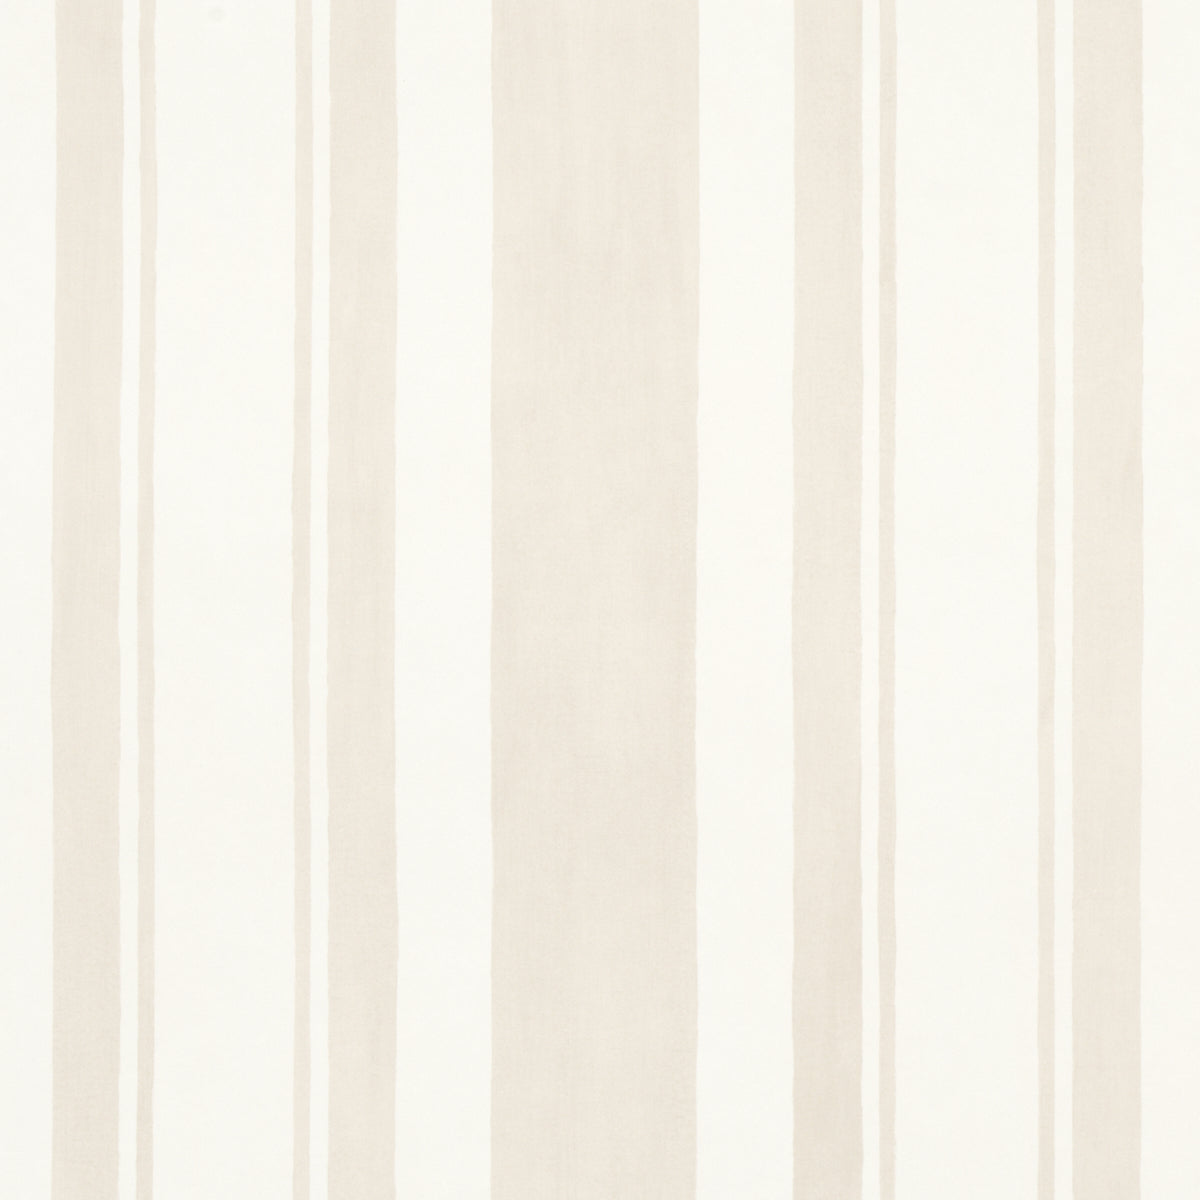 Black white striped wallpaper texture seamless 11699